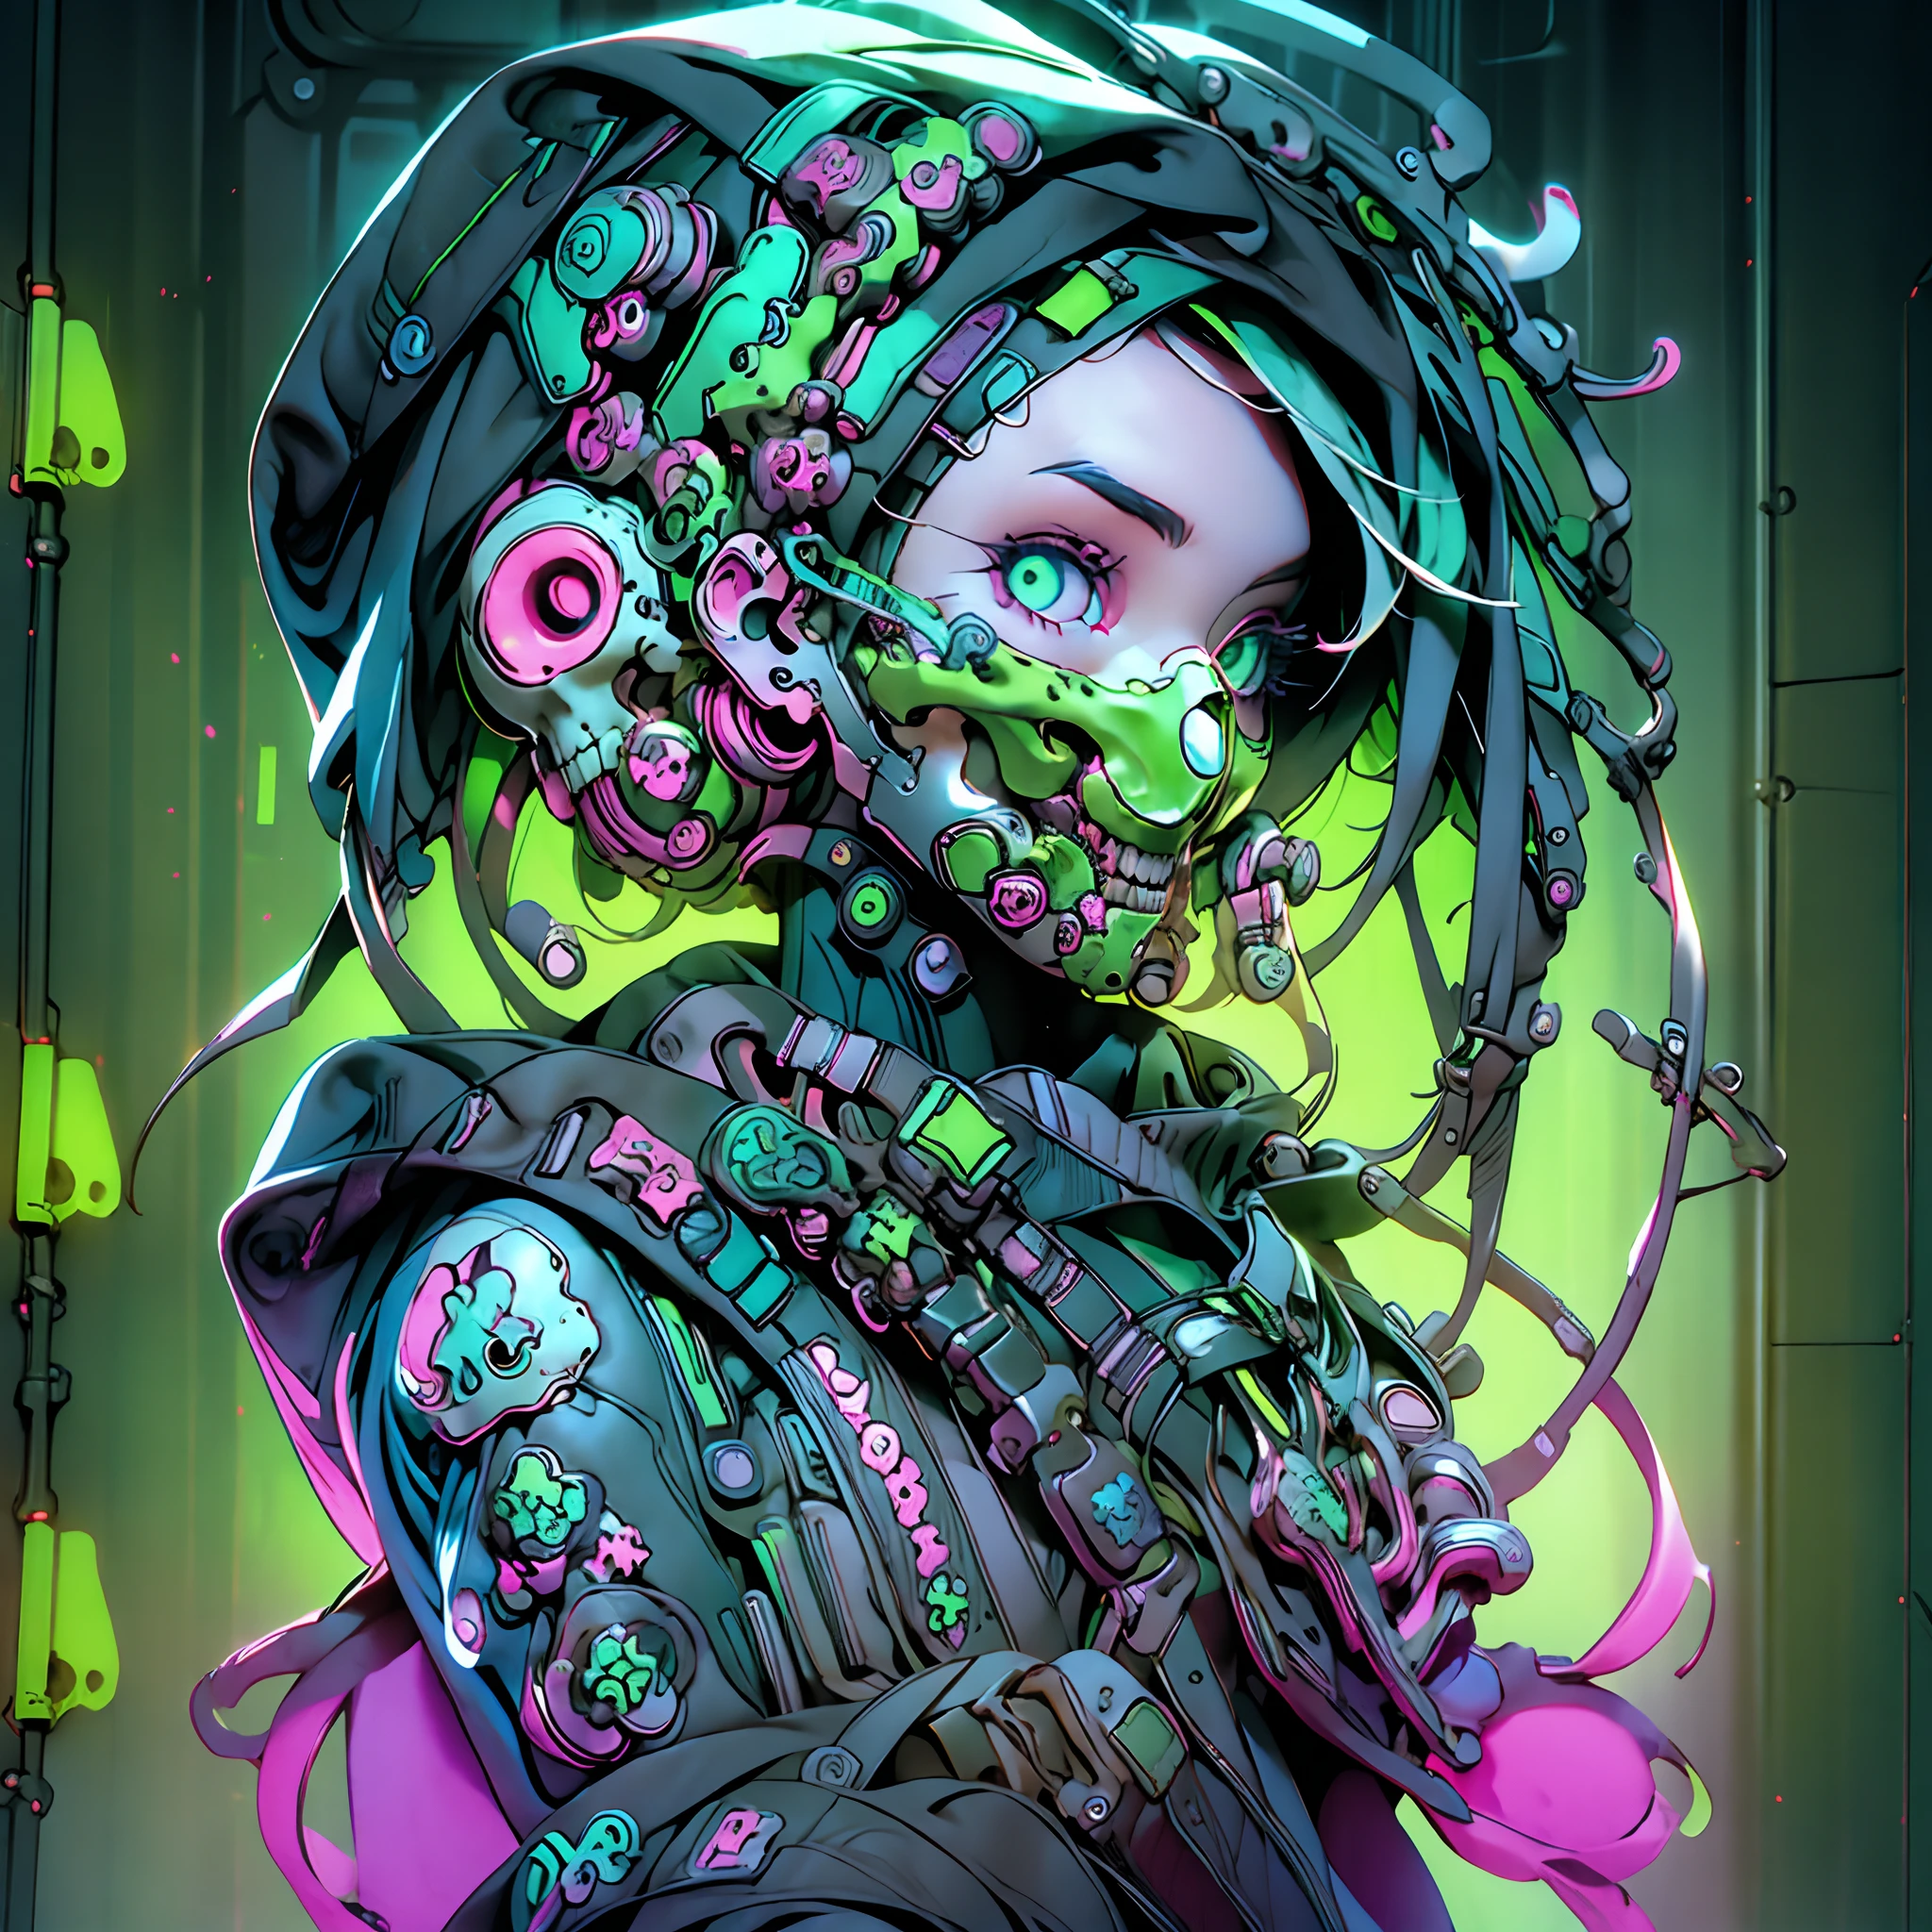 Sohle, einzig, alleinig_Frau neben einem Fenster,cyberpunk world,neongrüne Gasmaske mit Skelett-Design